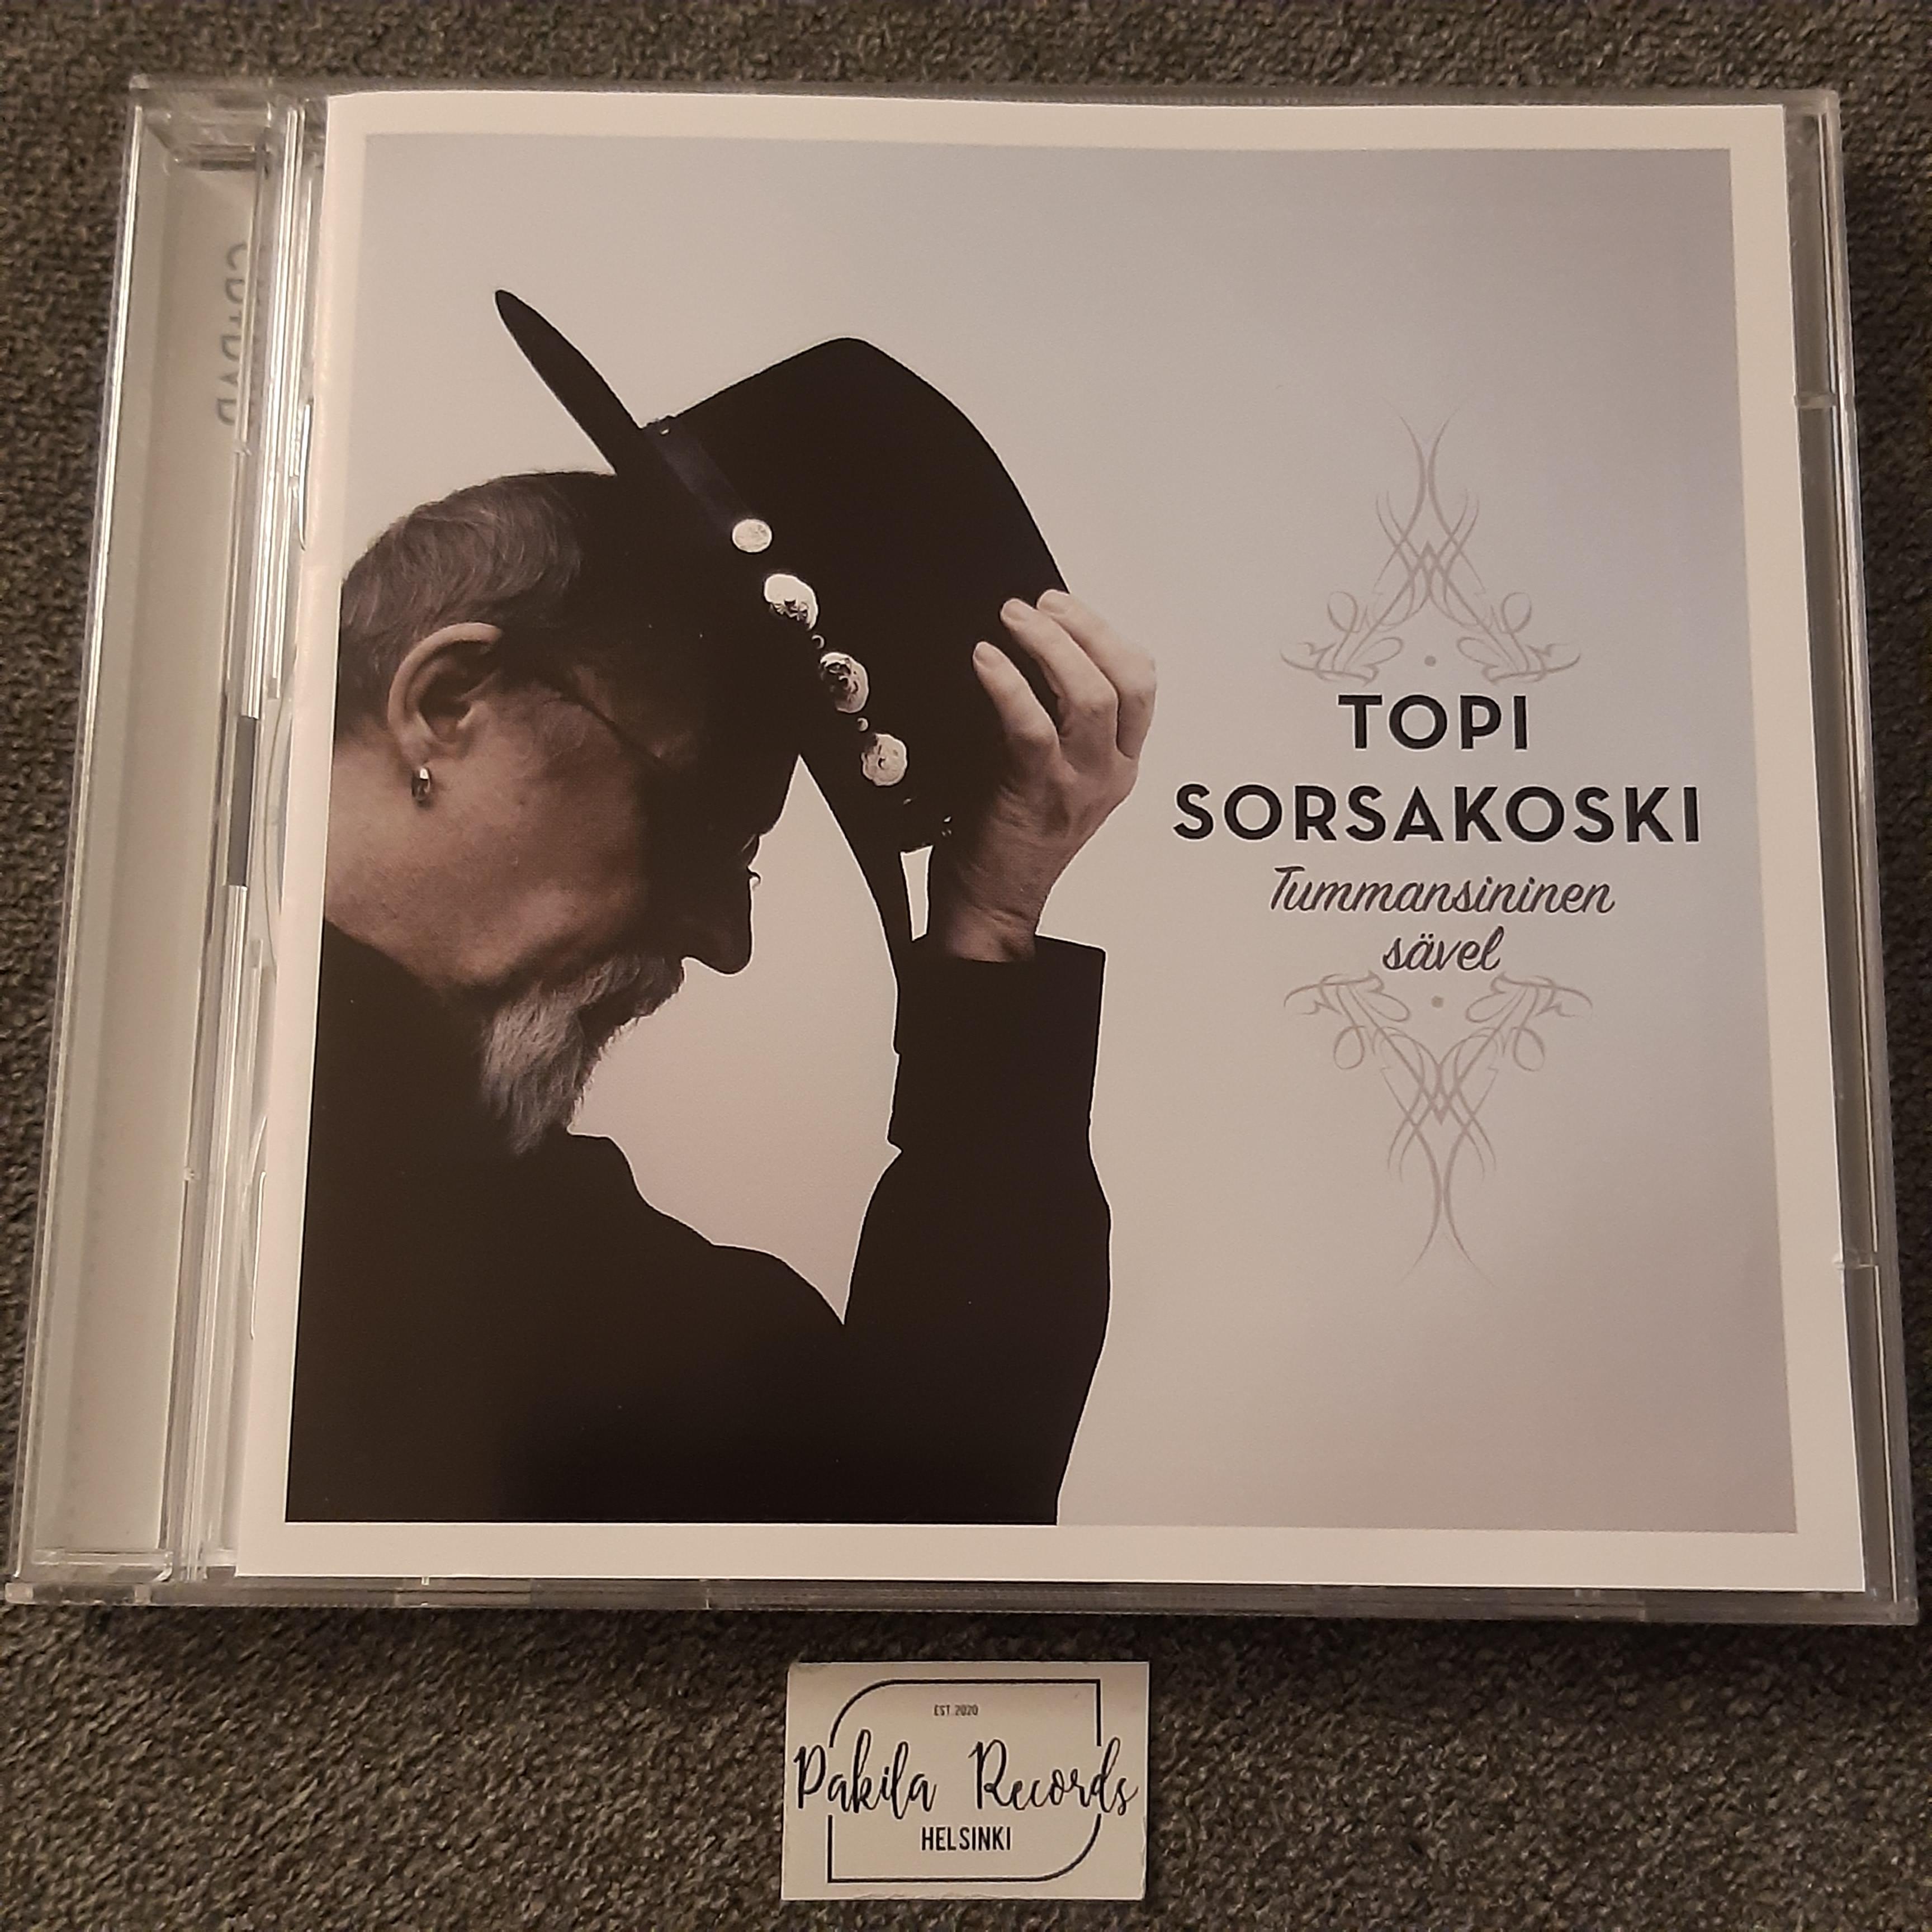 Topi Sorsakoski - Tummansininen sävel - CD + DVD (käytetty)